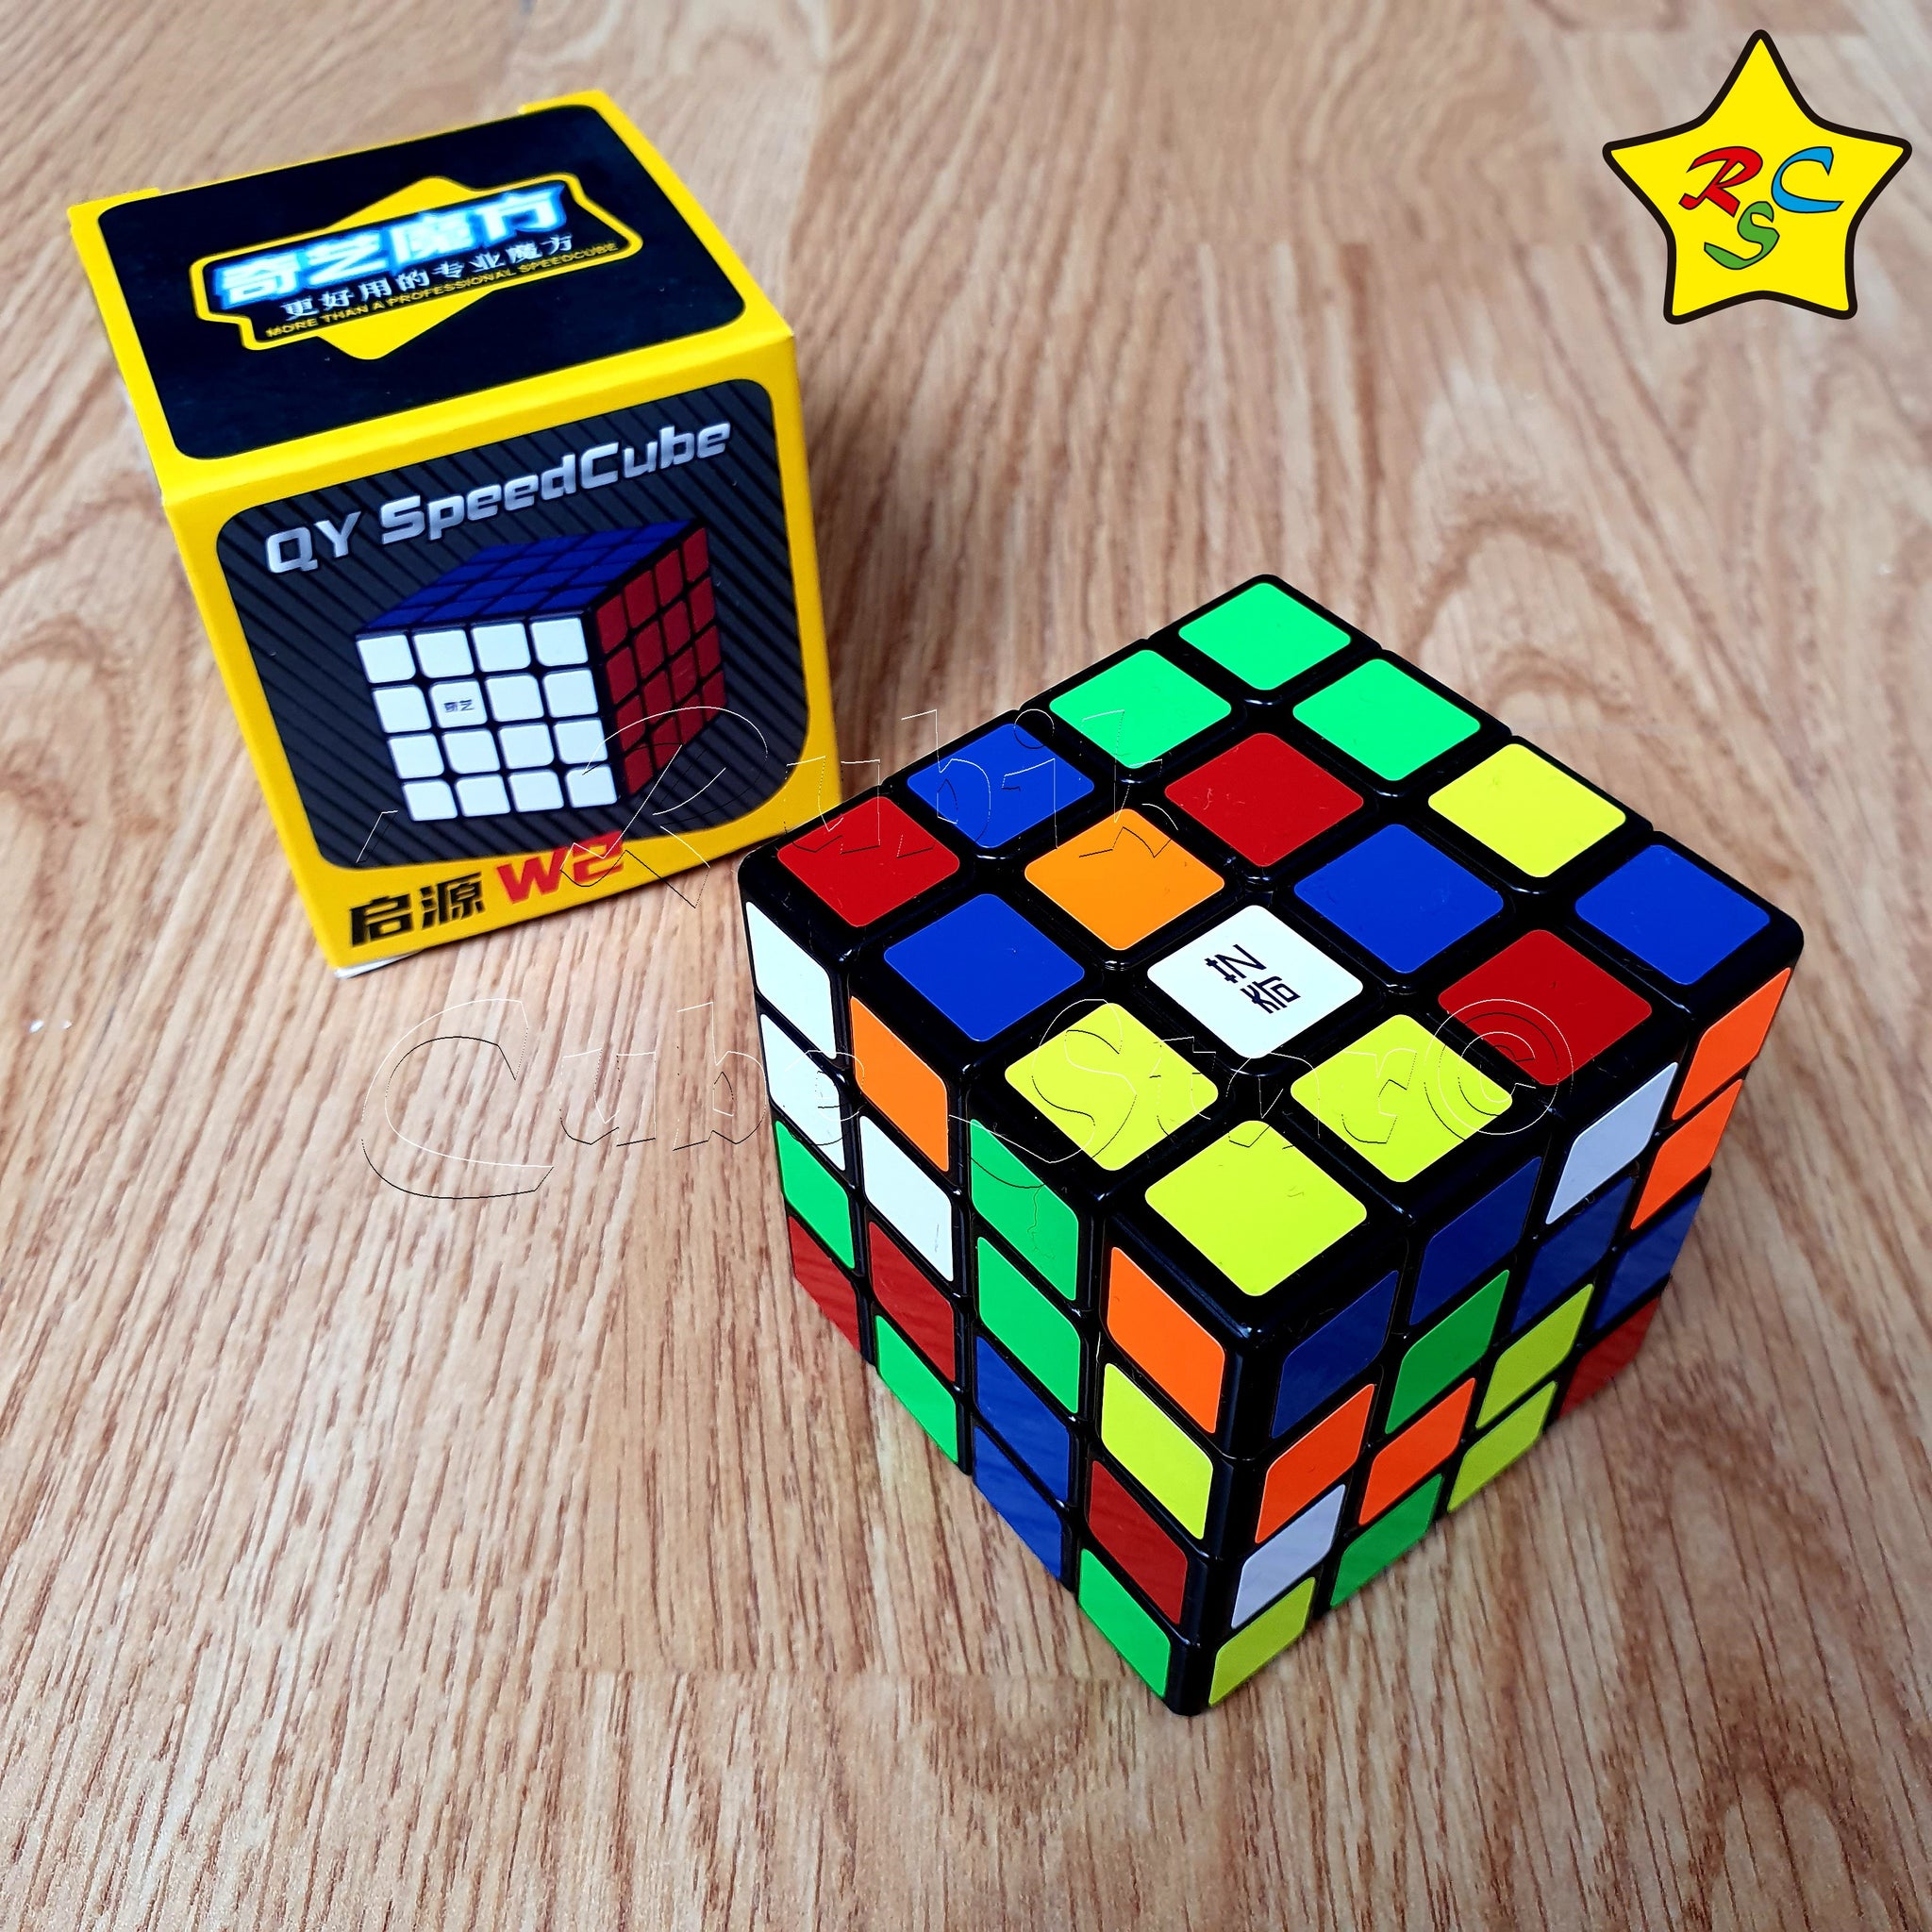 Cubo De Rubik 4x4 Precio Cubo Rubik Qiyi 4x4 V2 Qiyuan W2 Nuevo Speed Negro Mofange – Rubik Cube Star